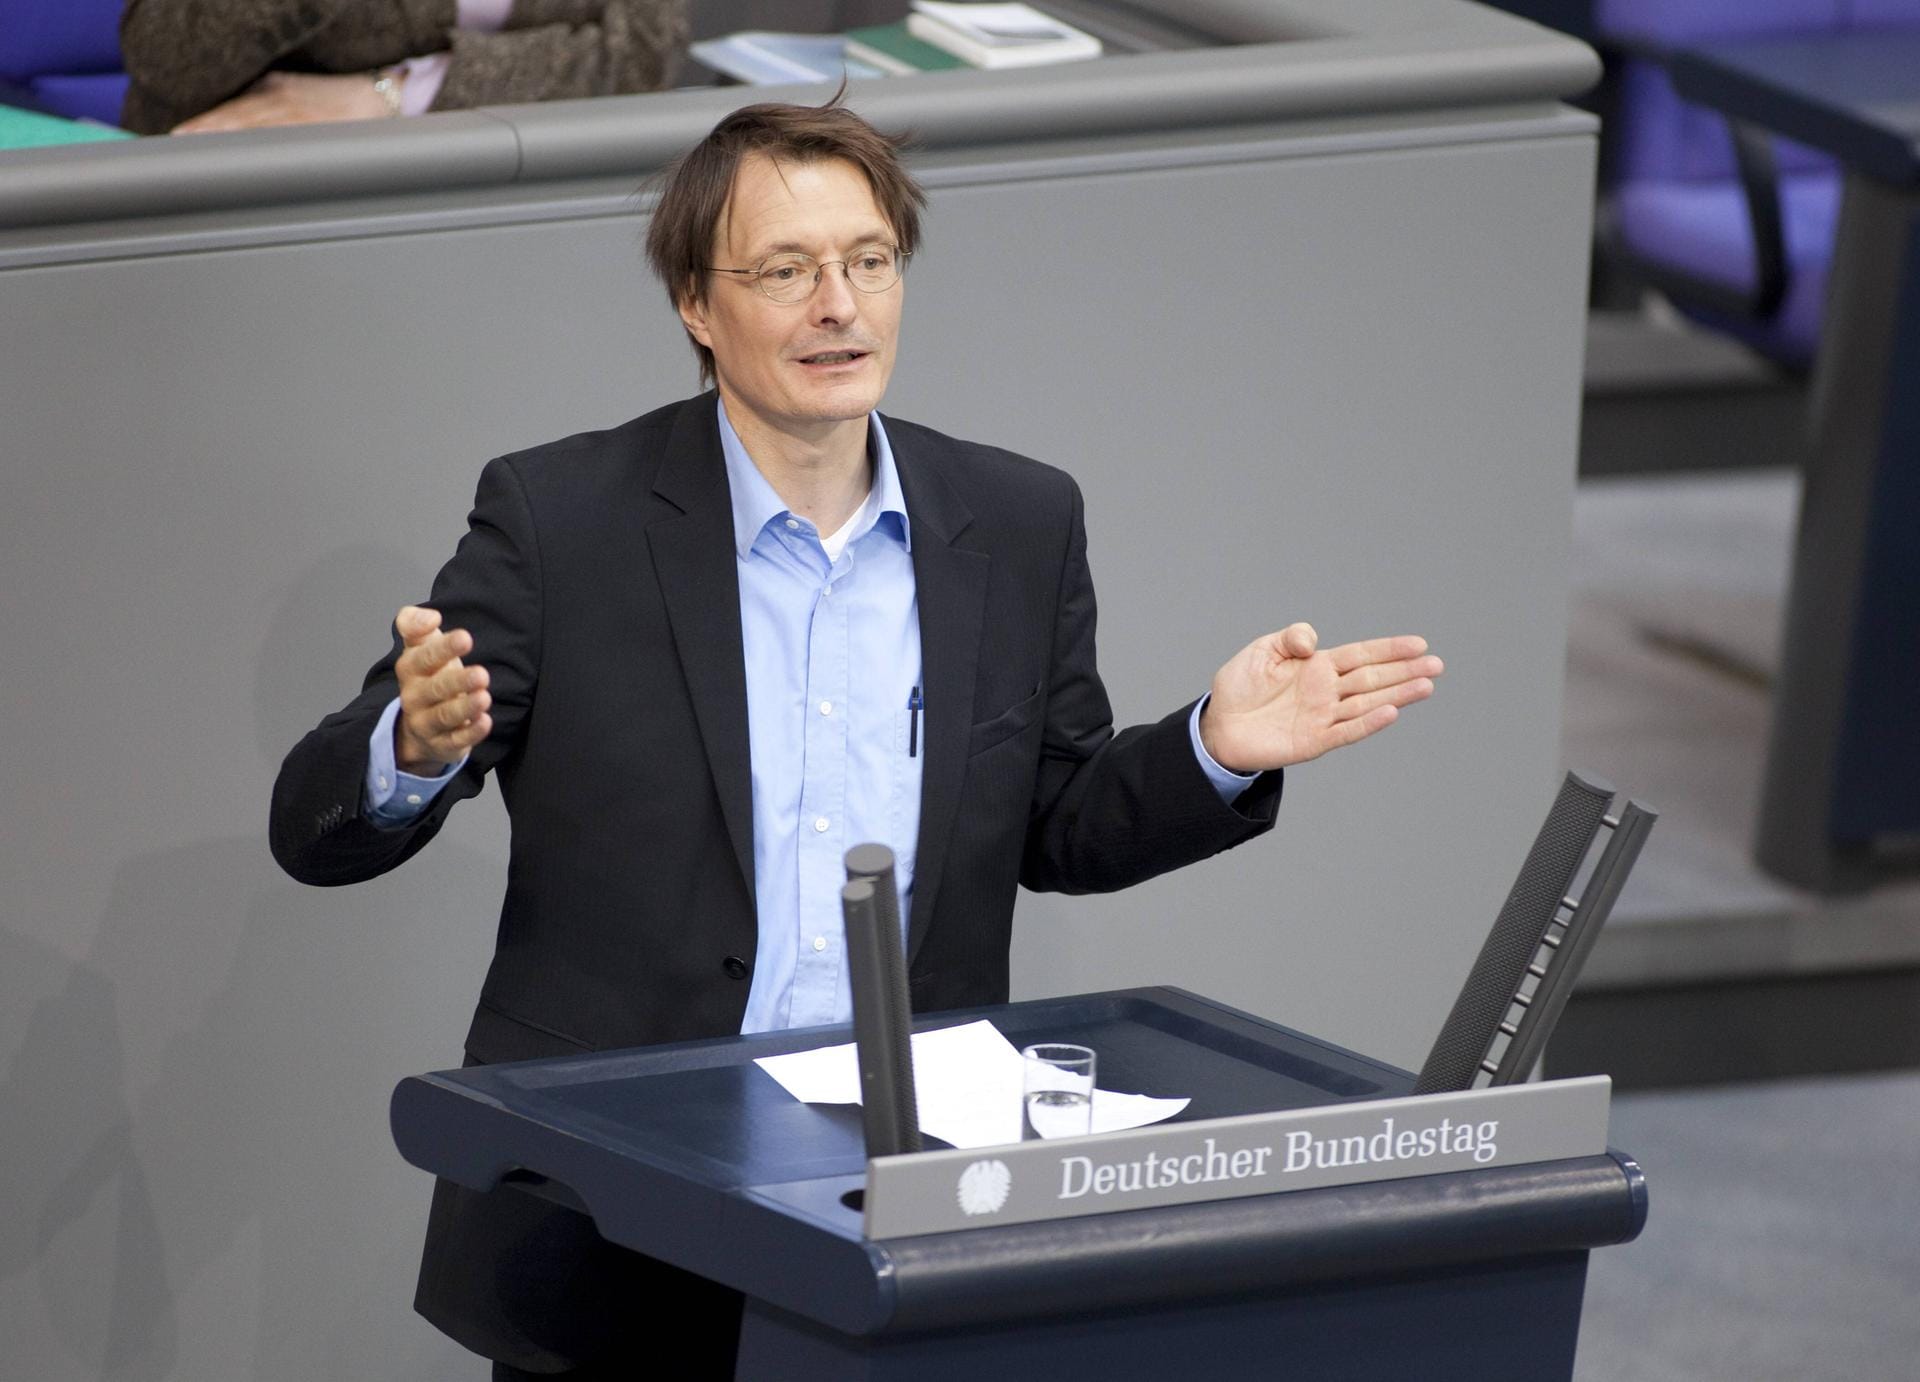 Seit Juni 2013 war Lauterbach Mitglied im Kompetenzteam des SPD-Kanzlerkandidaten Peer Steinbrück und verantwortlich für die Bereiche Gesundheit und Pflege.